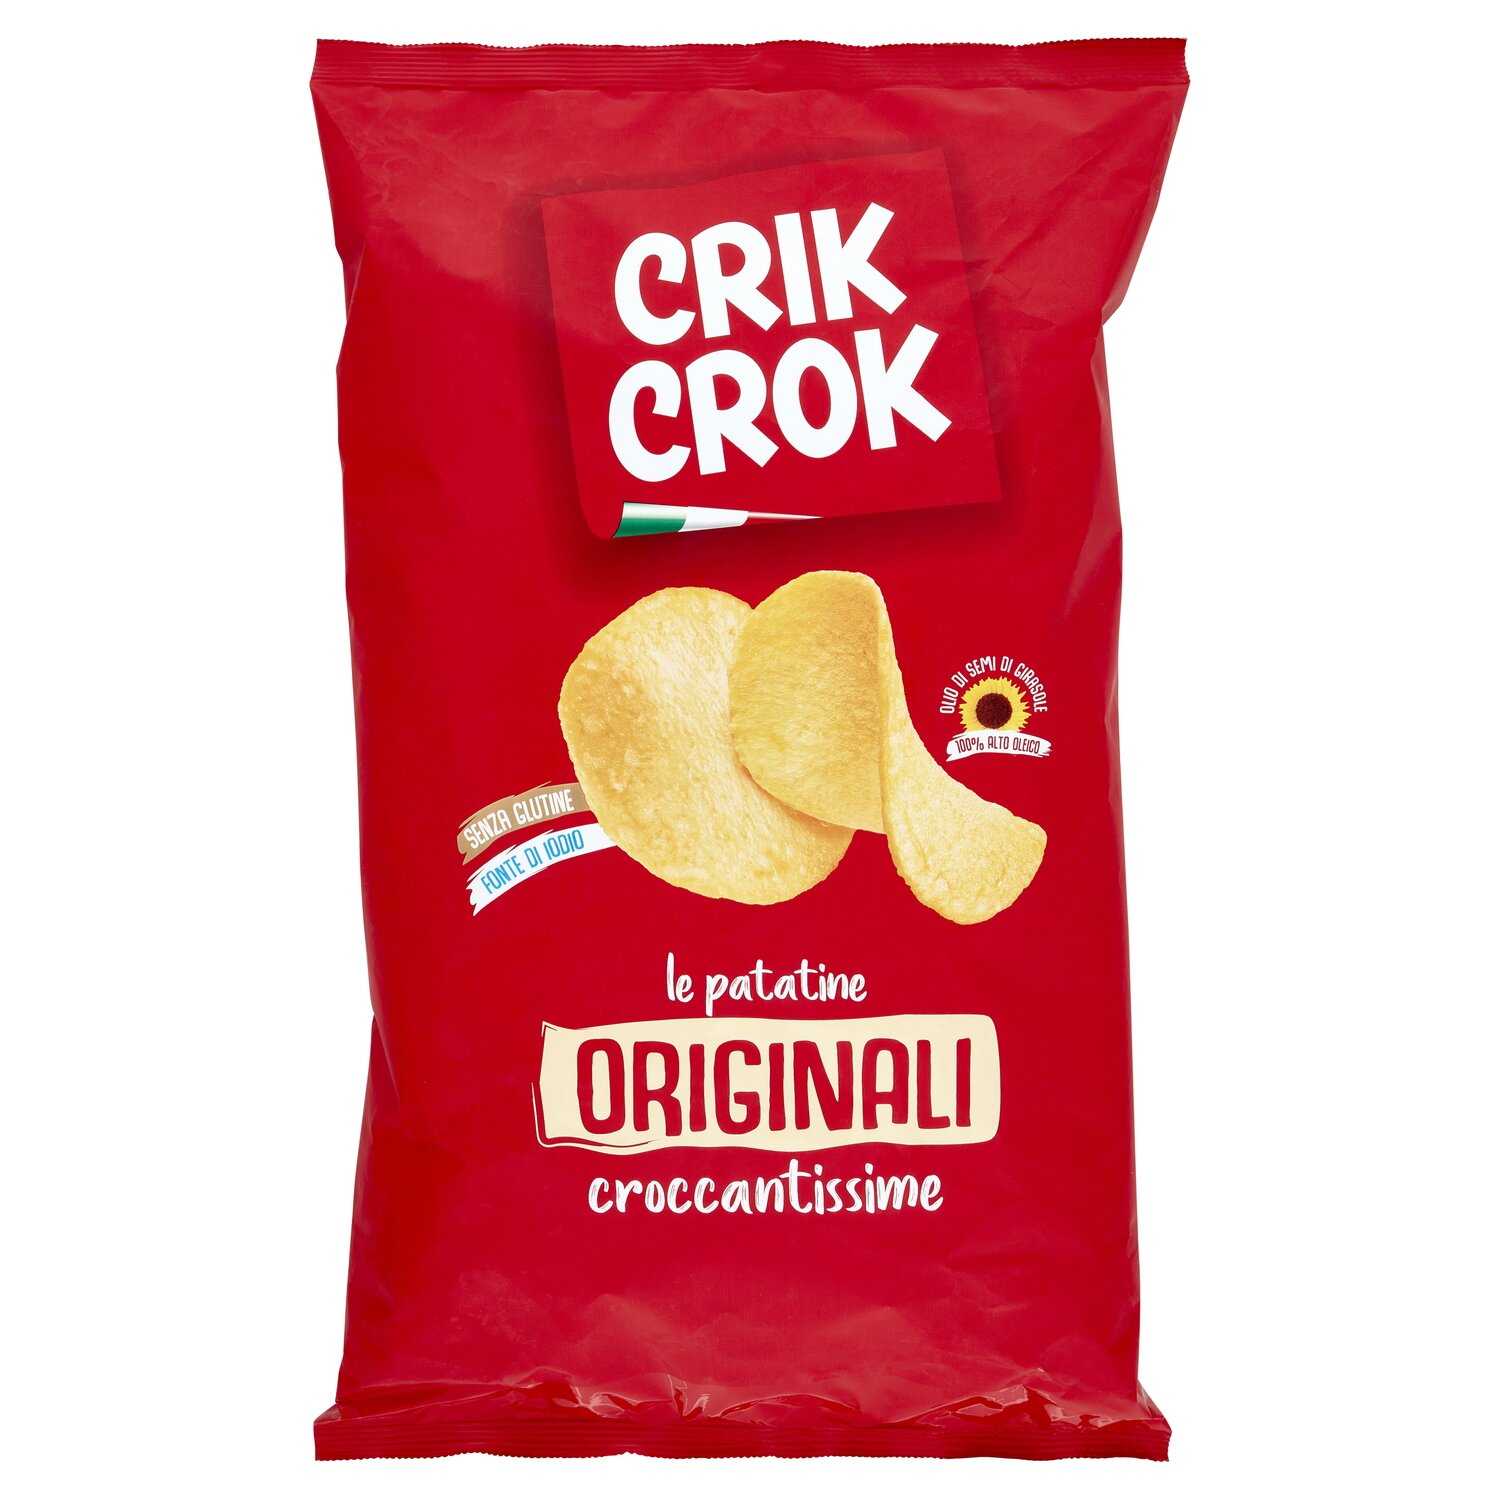 crik crok prodotti 2 lunga conservazione dolciaria e salato crik crok originali neutre gr 400 0